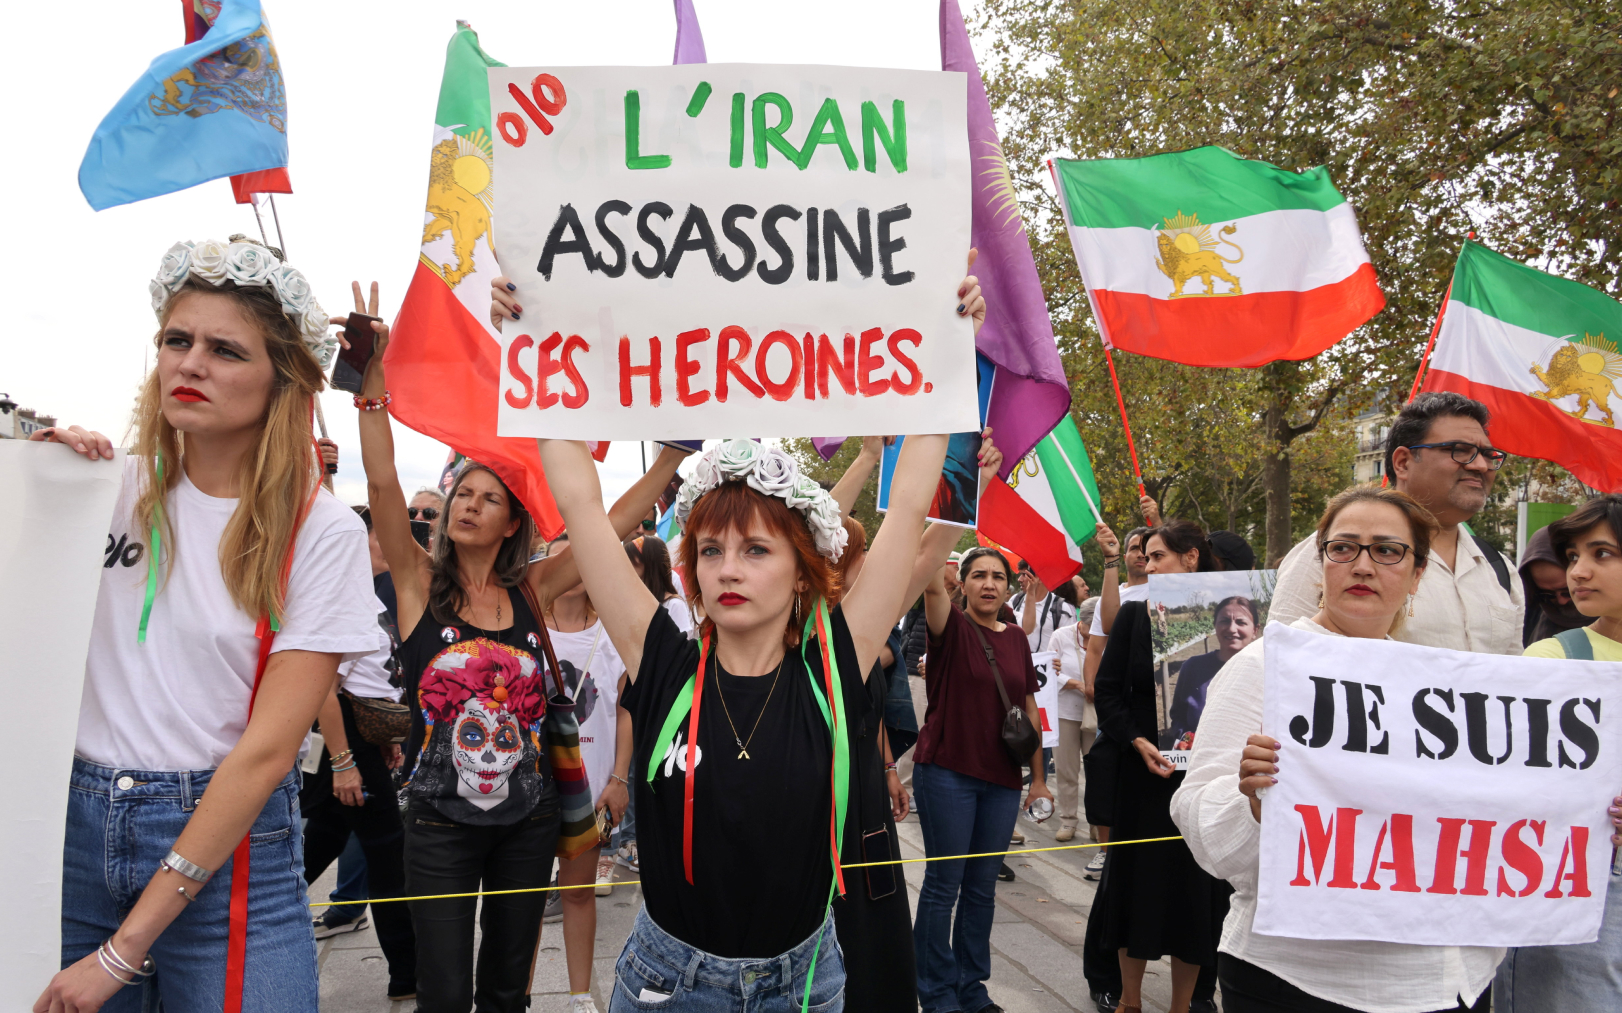 La mort de Mahsa Amini a indigné la population iranienne qui a multiplié les manifestations fin 2022, ici une grande marche organisée à Paris un an après son décès pour lui rendre hommage. LP/Delphine Goldsztejn